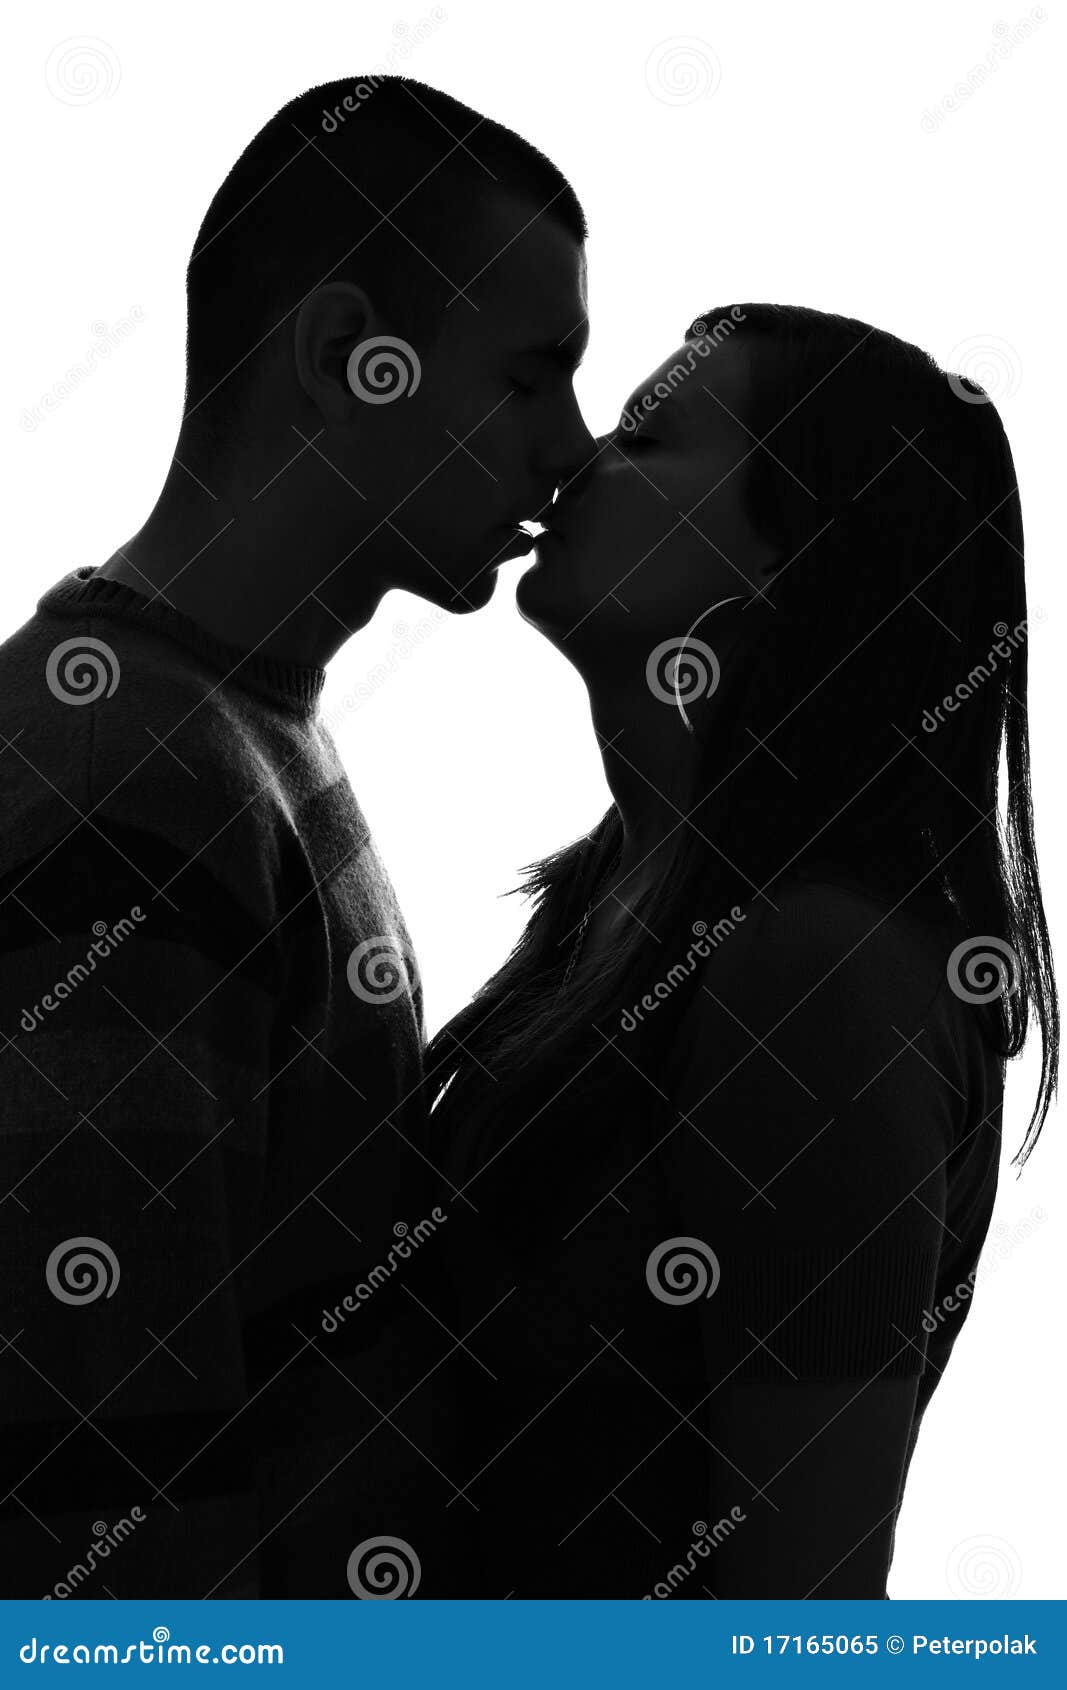 Black Girl Kissing